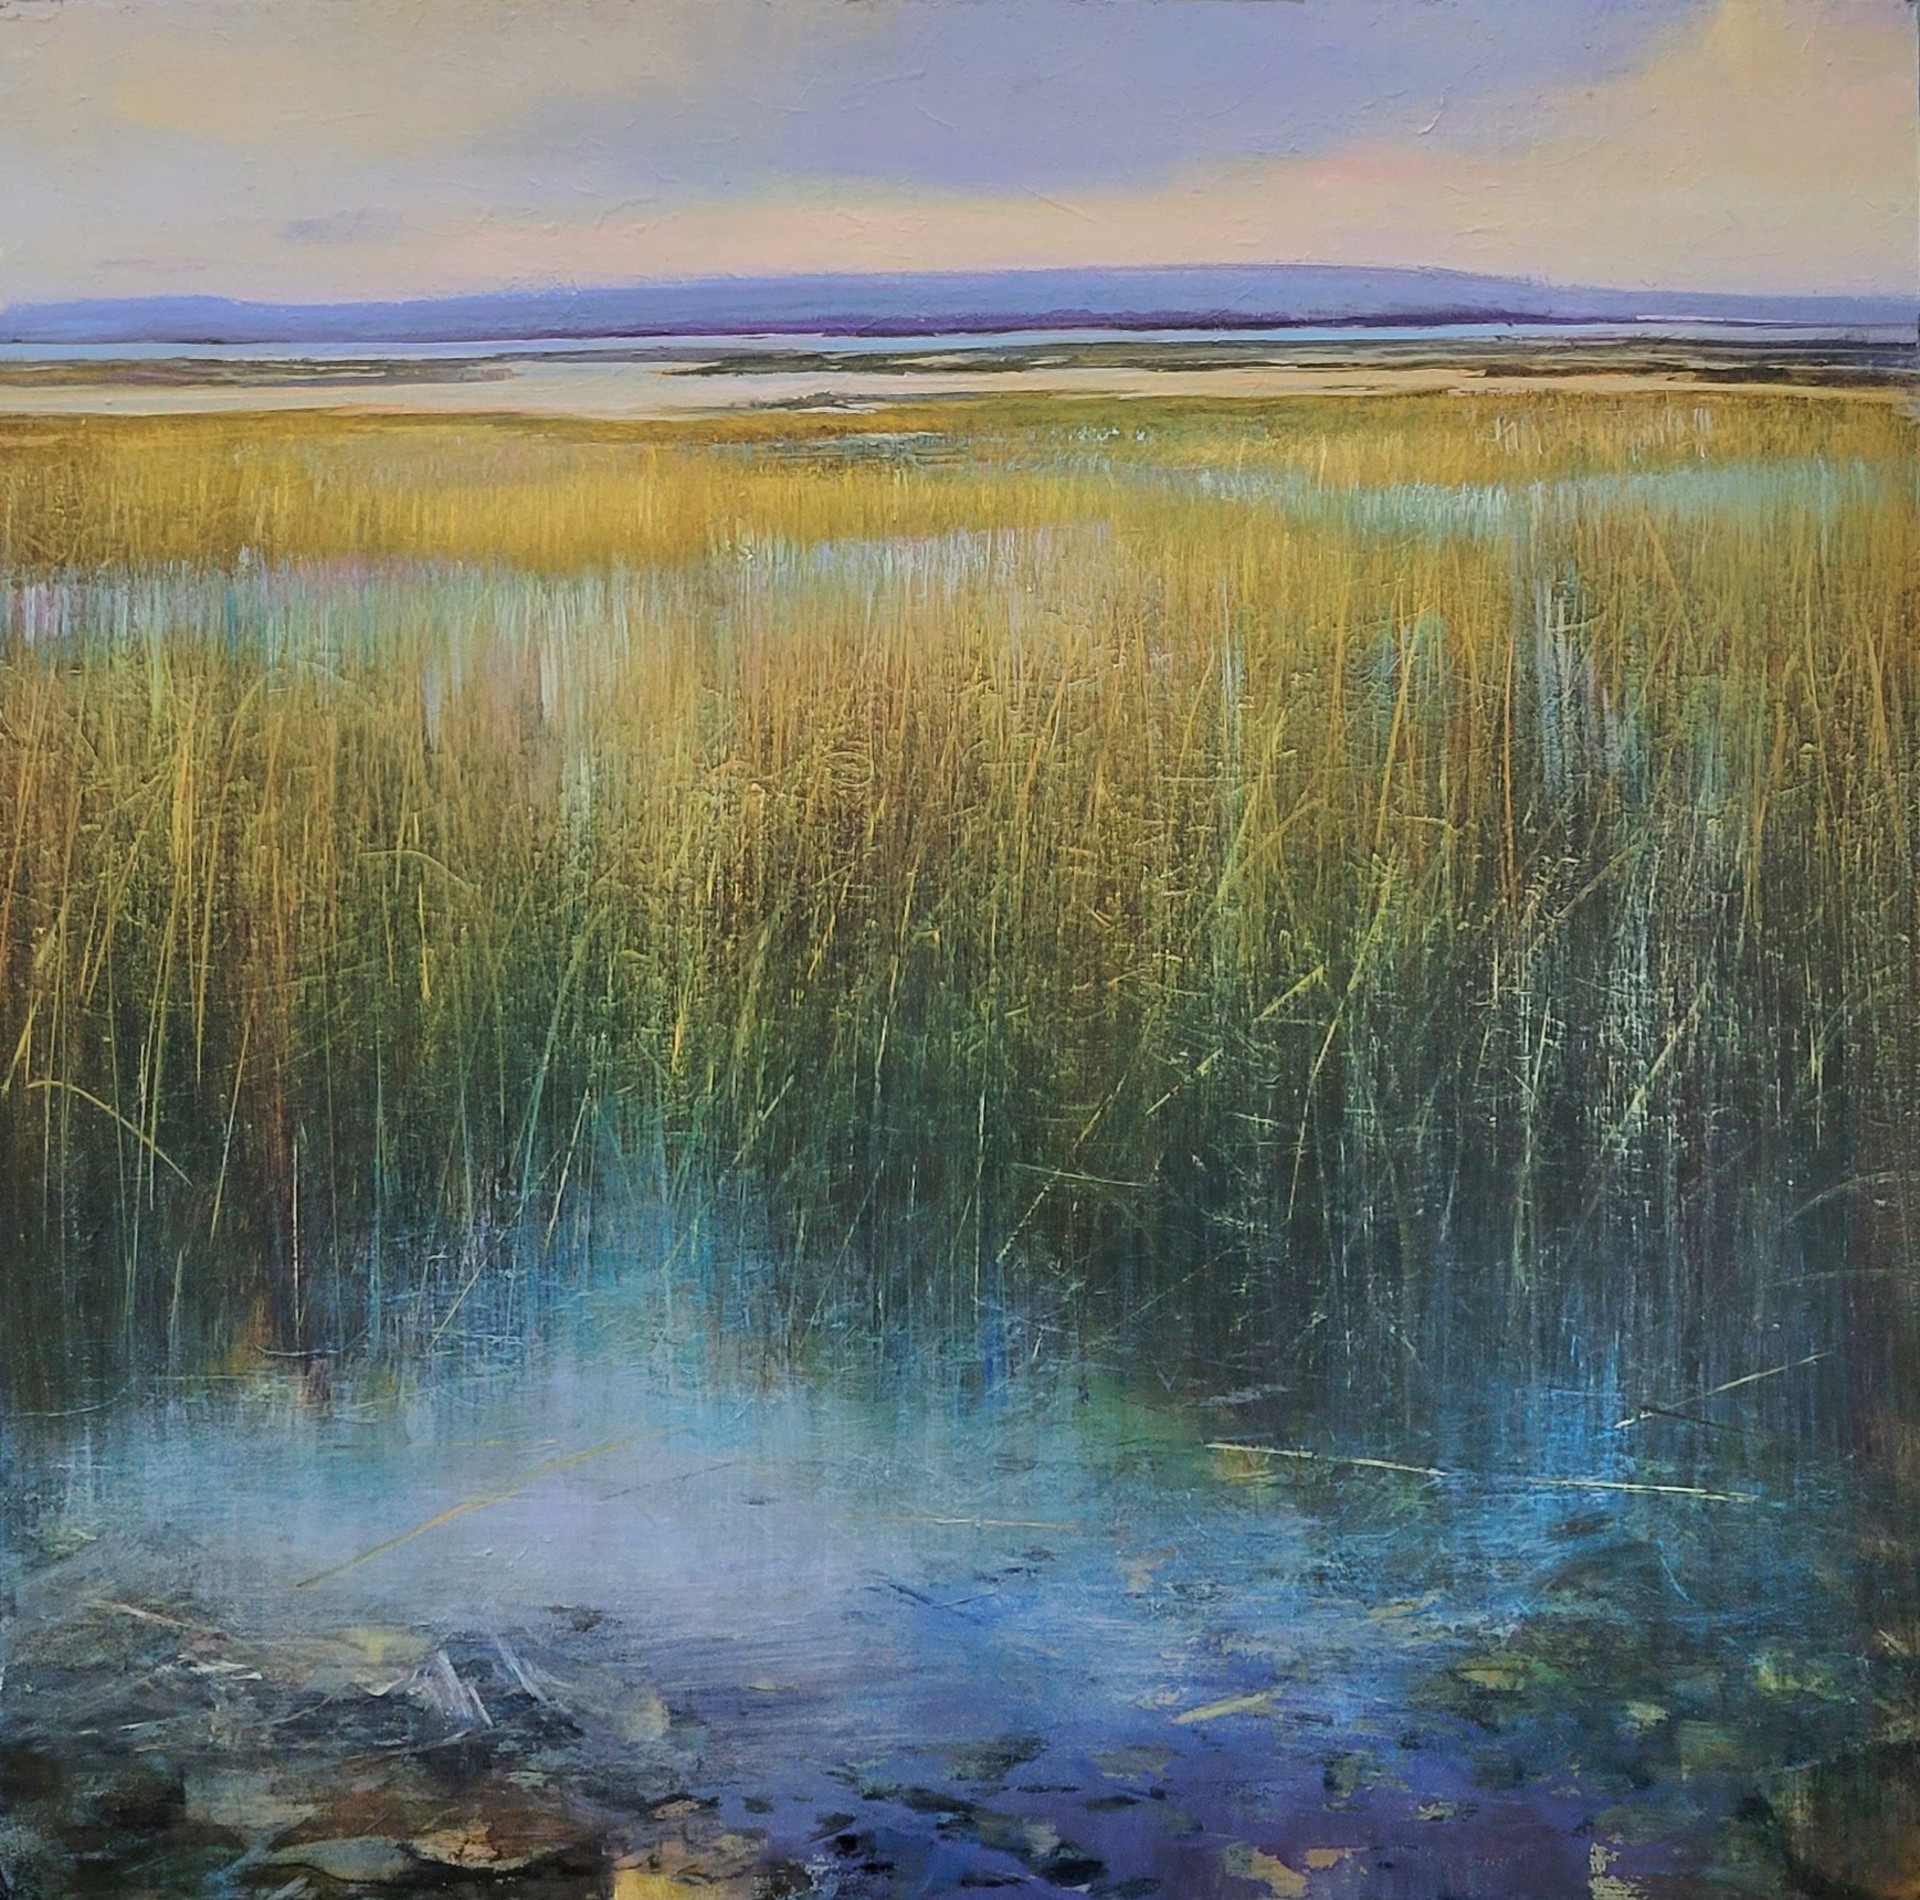 Across an Azure Marsh by David Dunlop